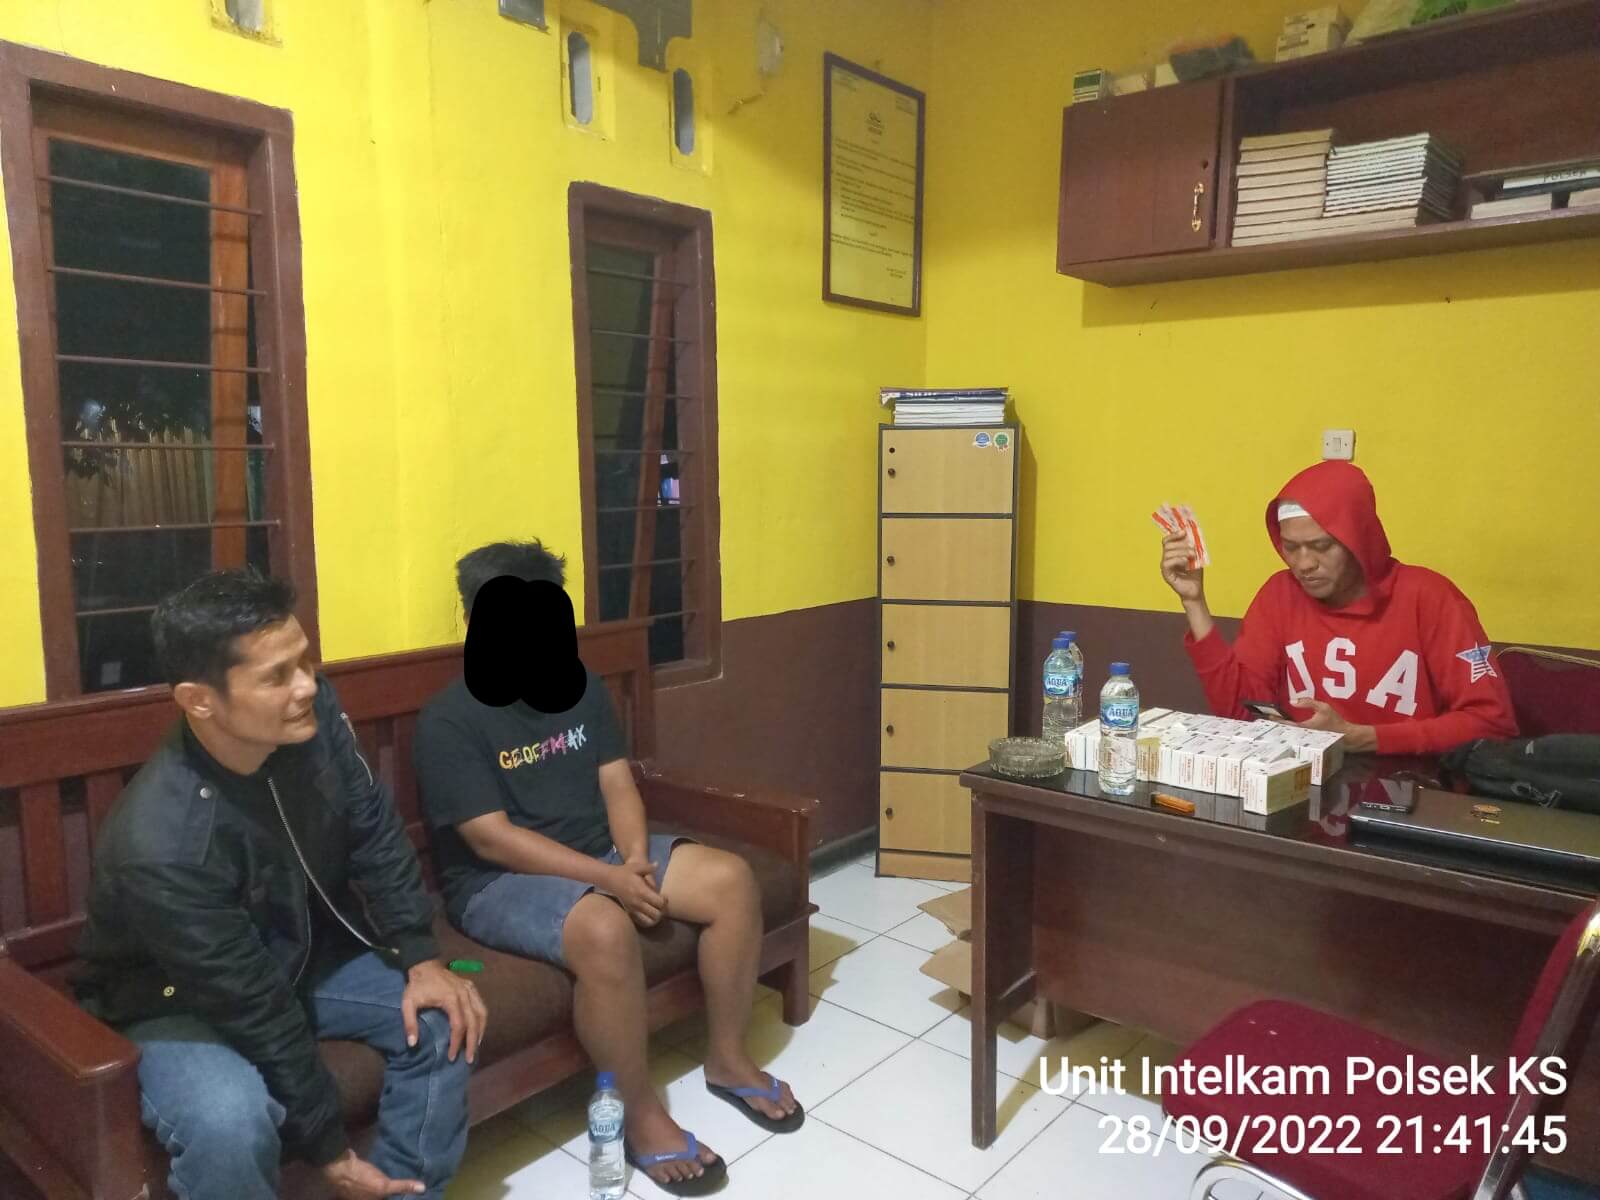 Sepasang Remaja Diamankan Saat Transaksi Samcodin, Barang Diperoleh Secara Online 